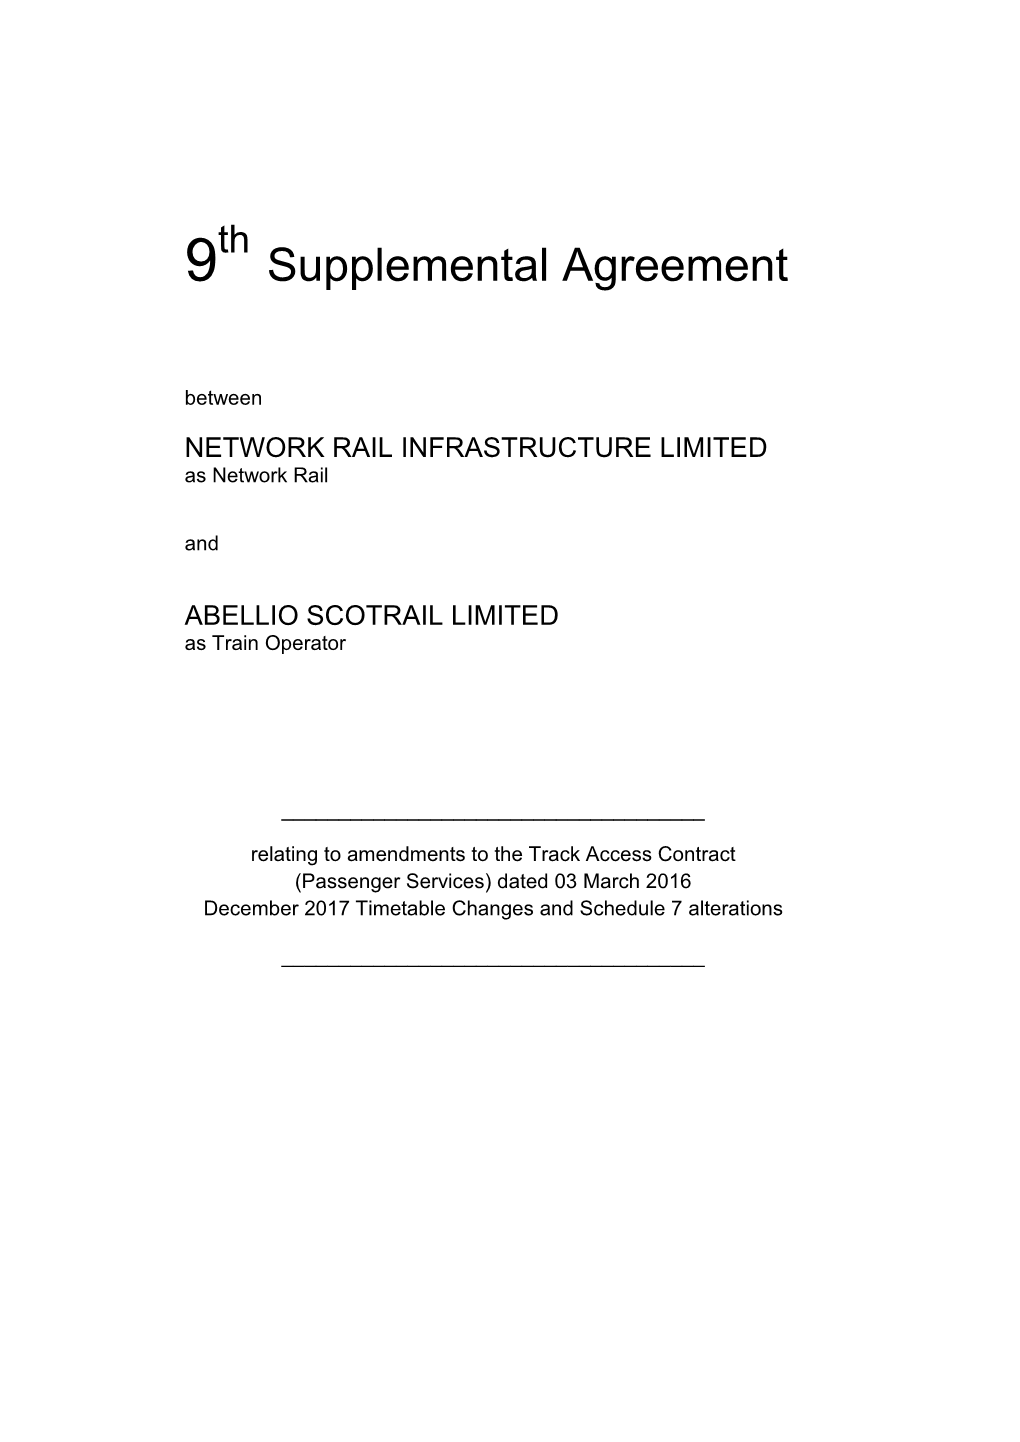 Abellio Scotrail 9Th SA Agreement